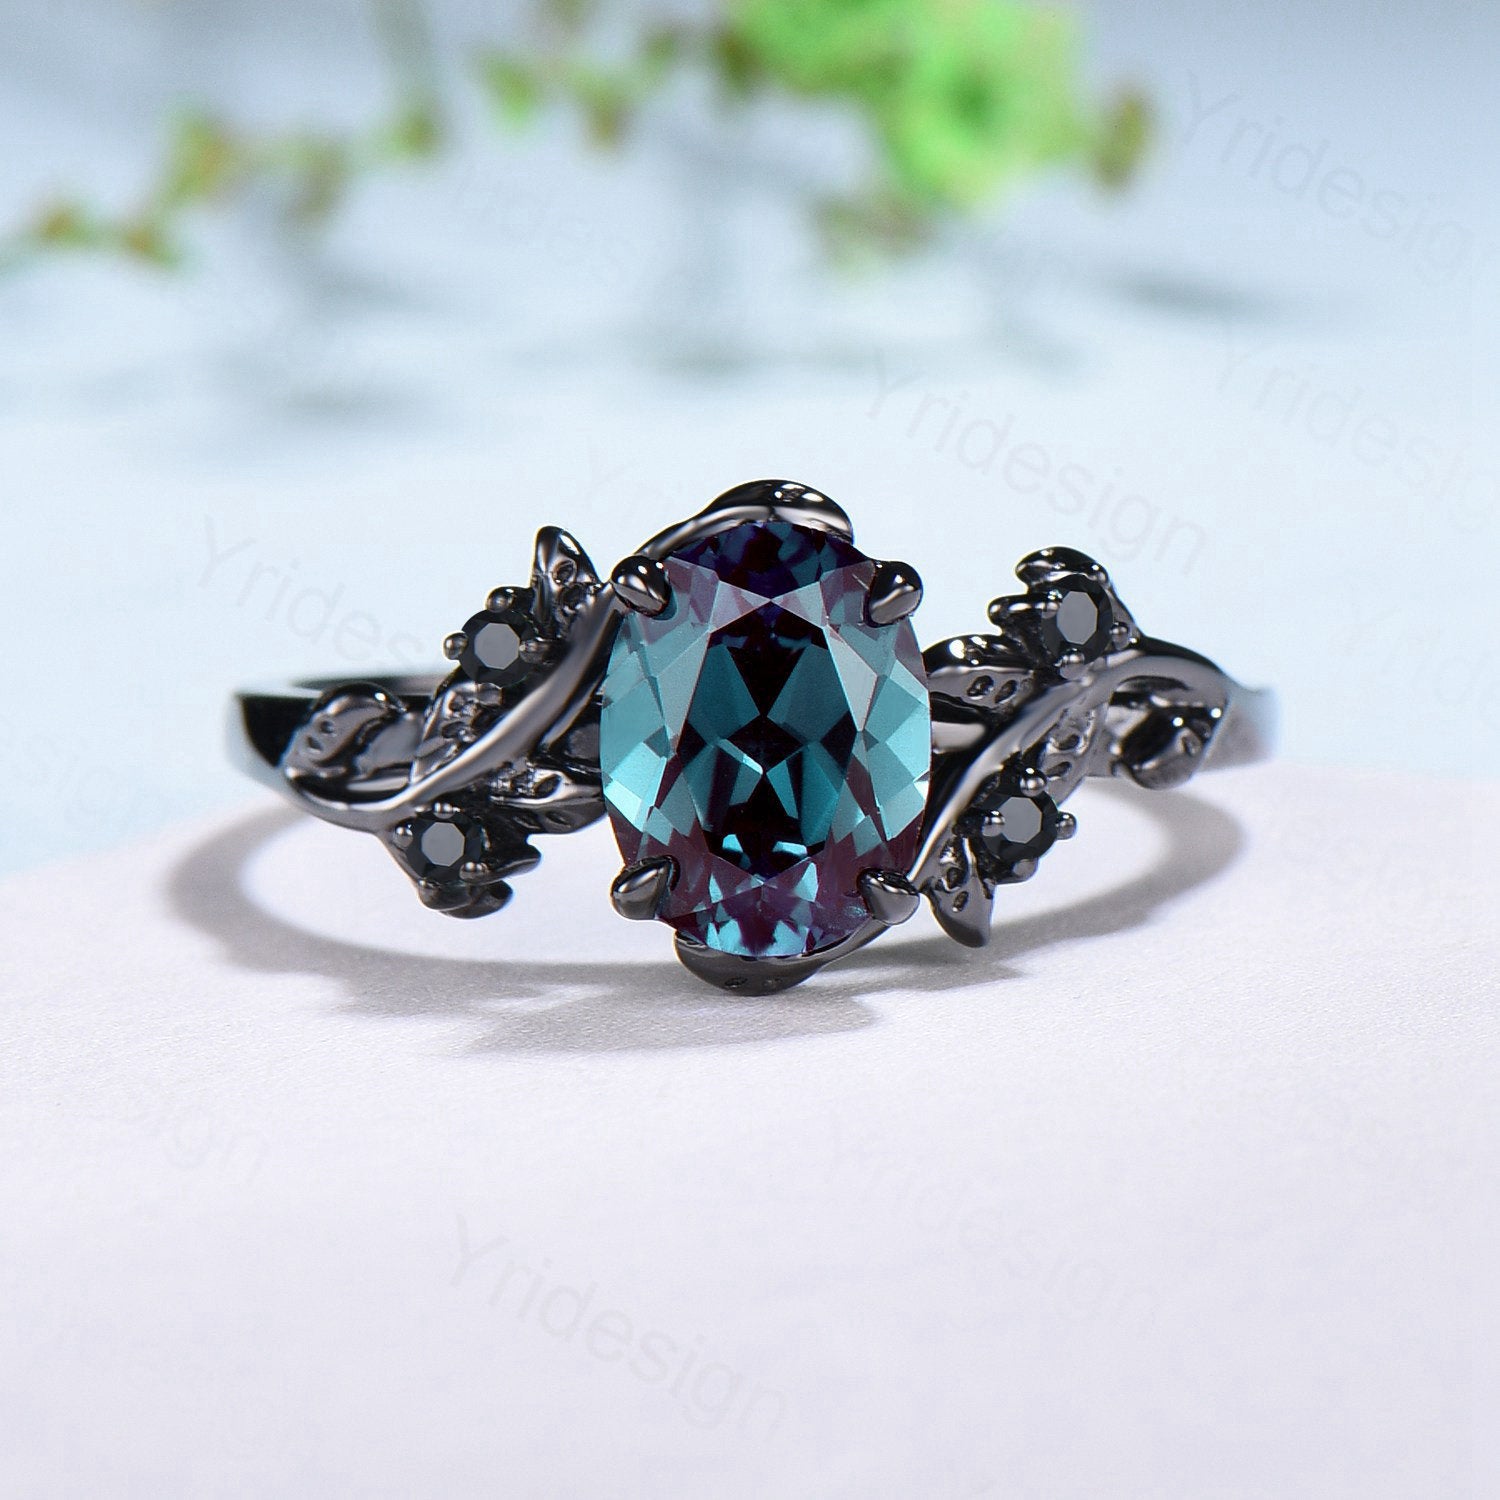 Buy quality 18k gold blue stone flower design ring for women pj-r002 in Durg